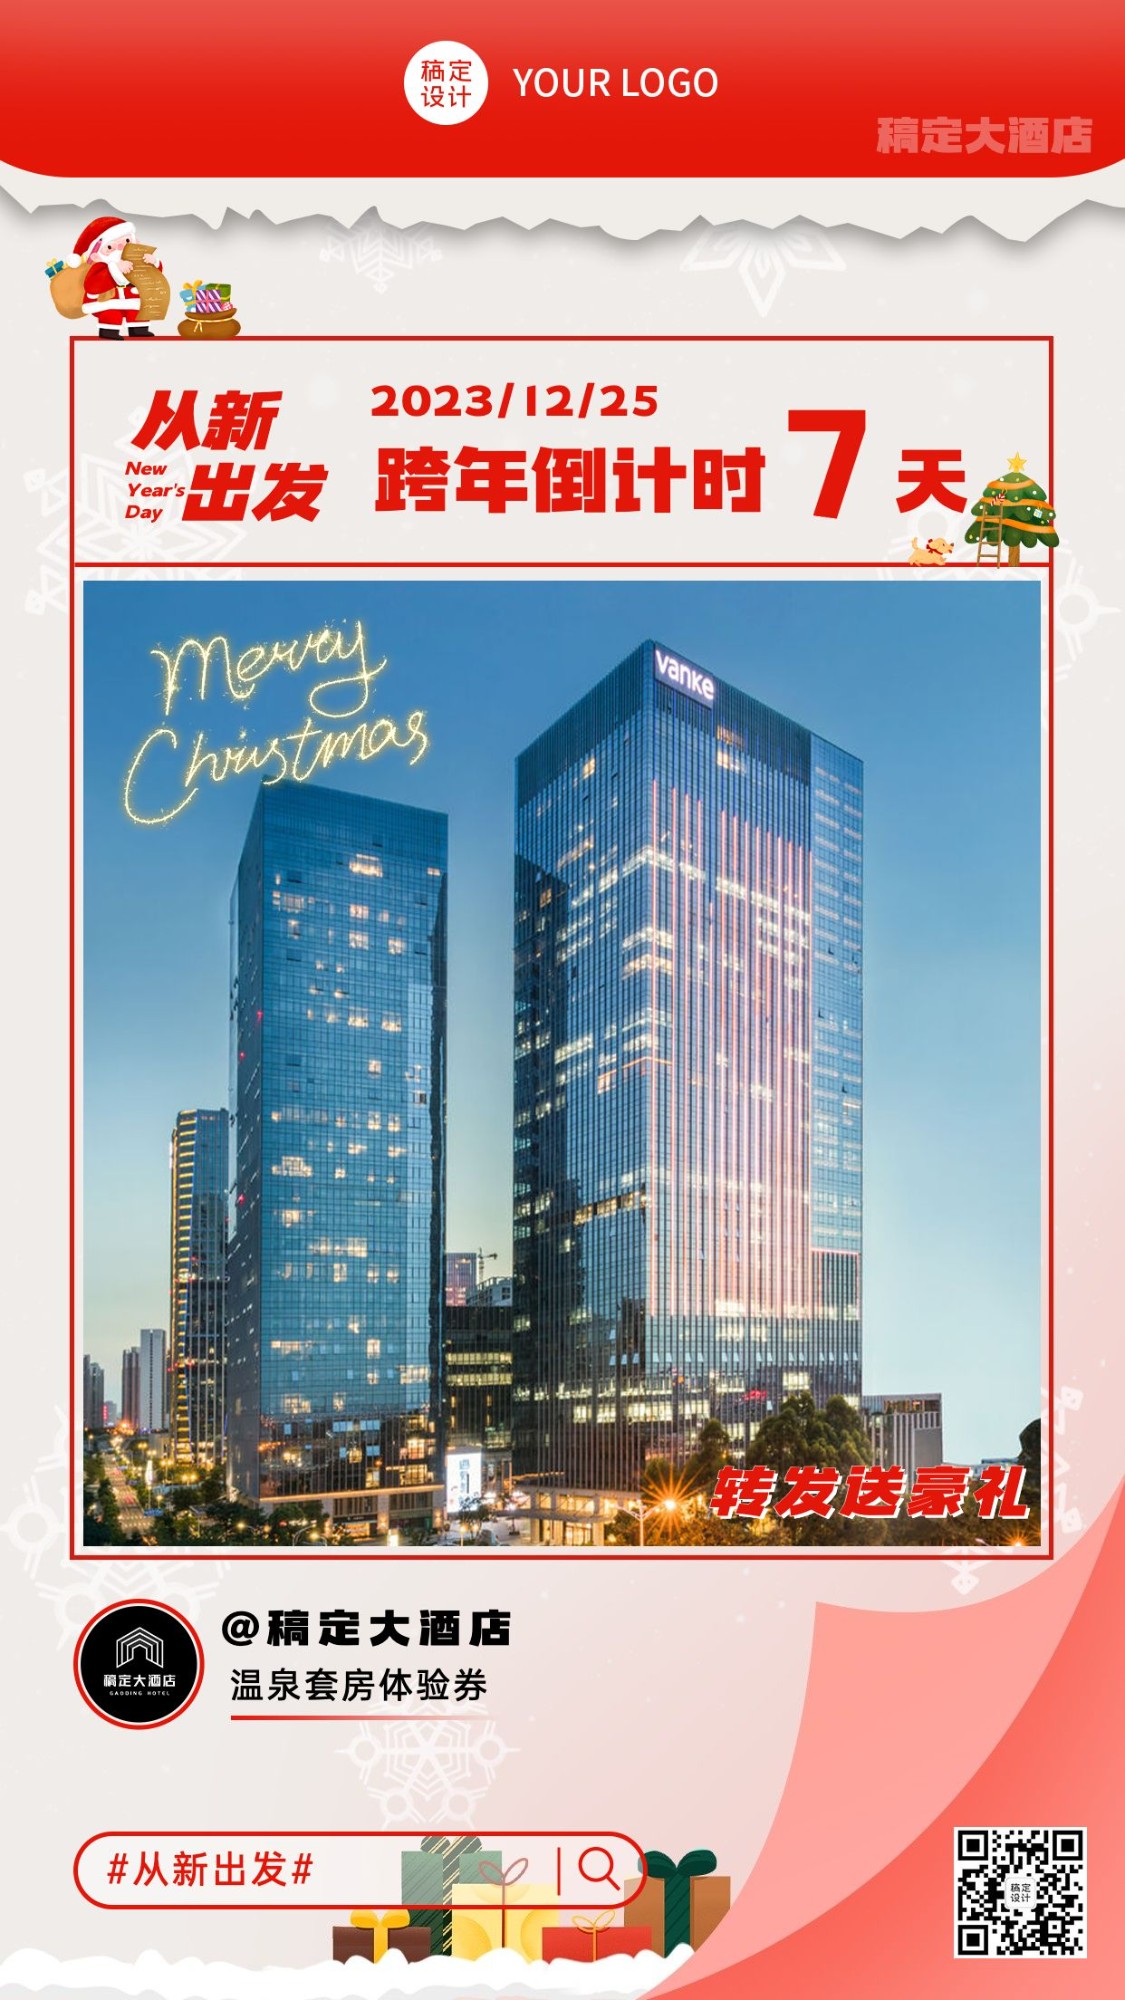 旅游圣诞元旦新年跨年倒计时日历酒店促销手机海报